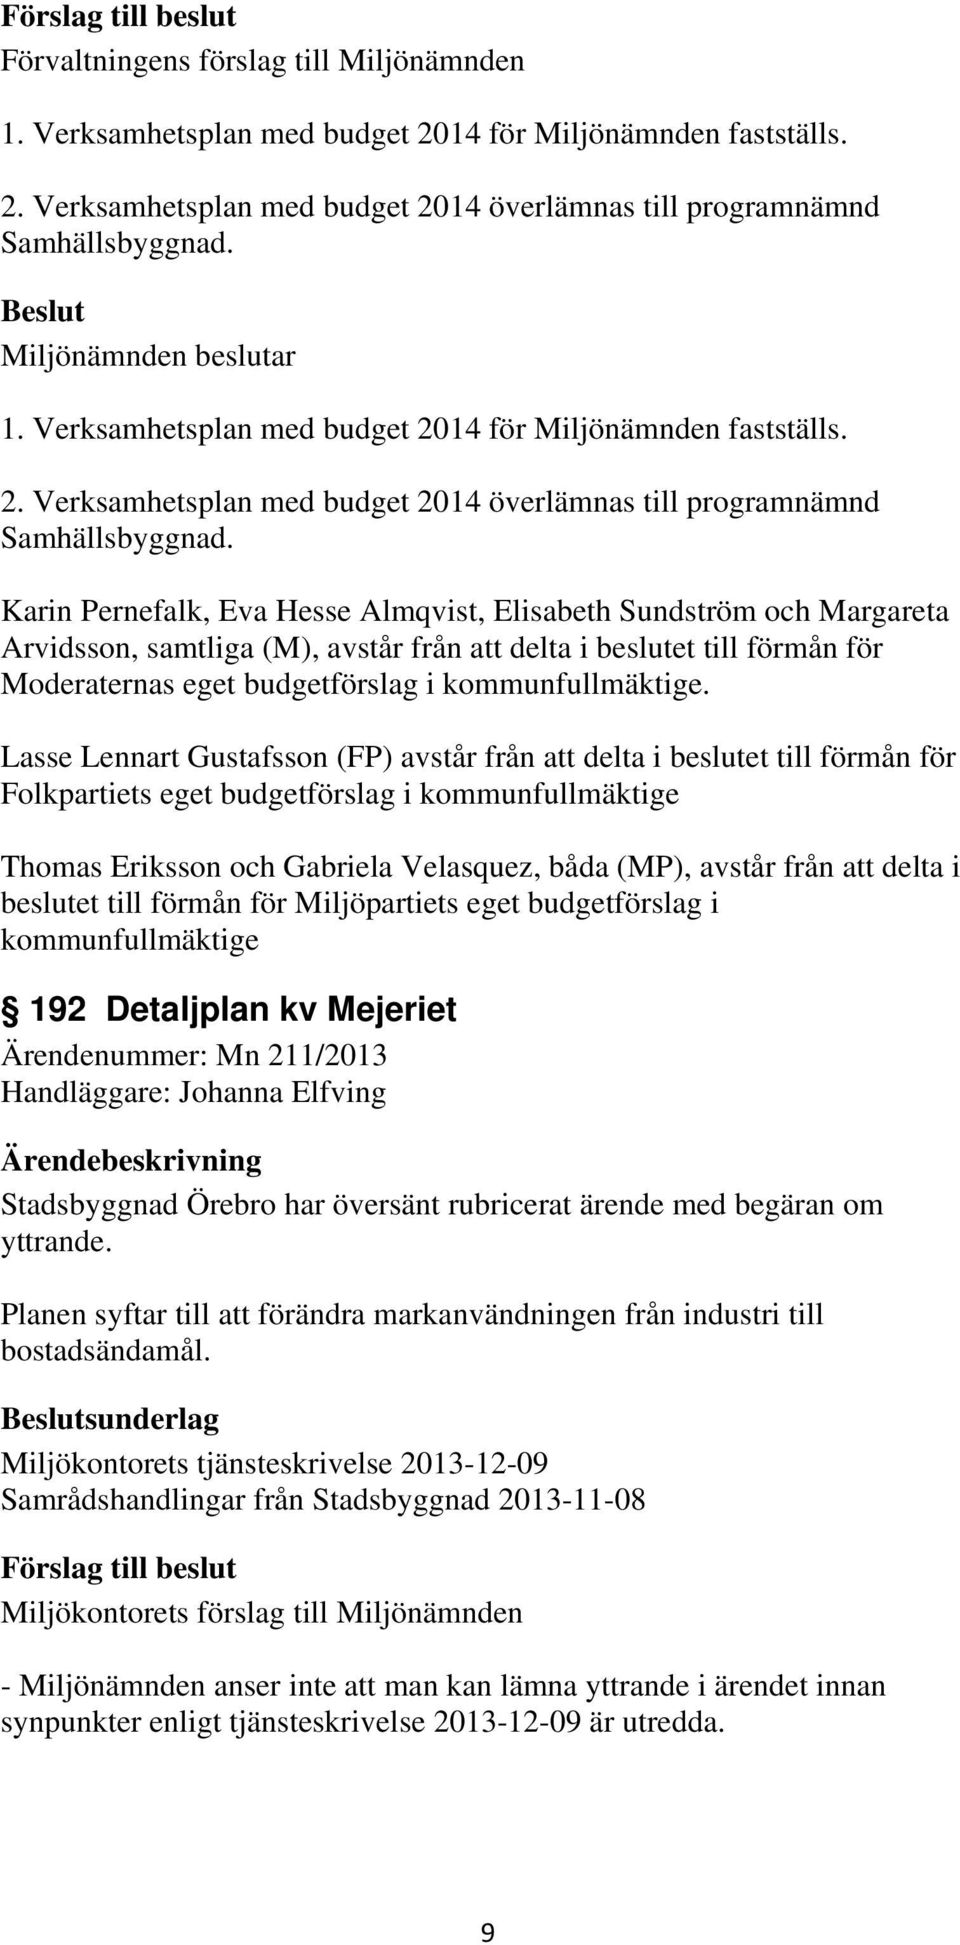 Karin Pernefalk, Eva Hesse Almqvist, Elisabeth Sundström och Margareta Arvidsson, samtliga (M), avstår från att delta i beslutet till förmån för Moderaternas eget budgetförslag i kommunfullmäktige.